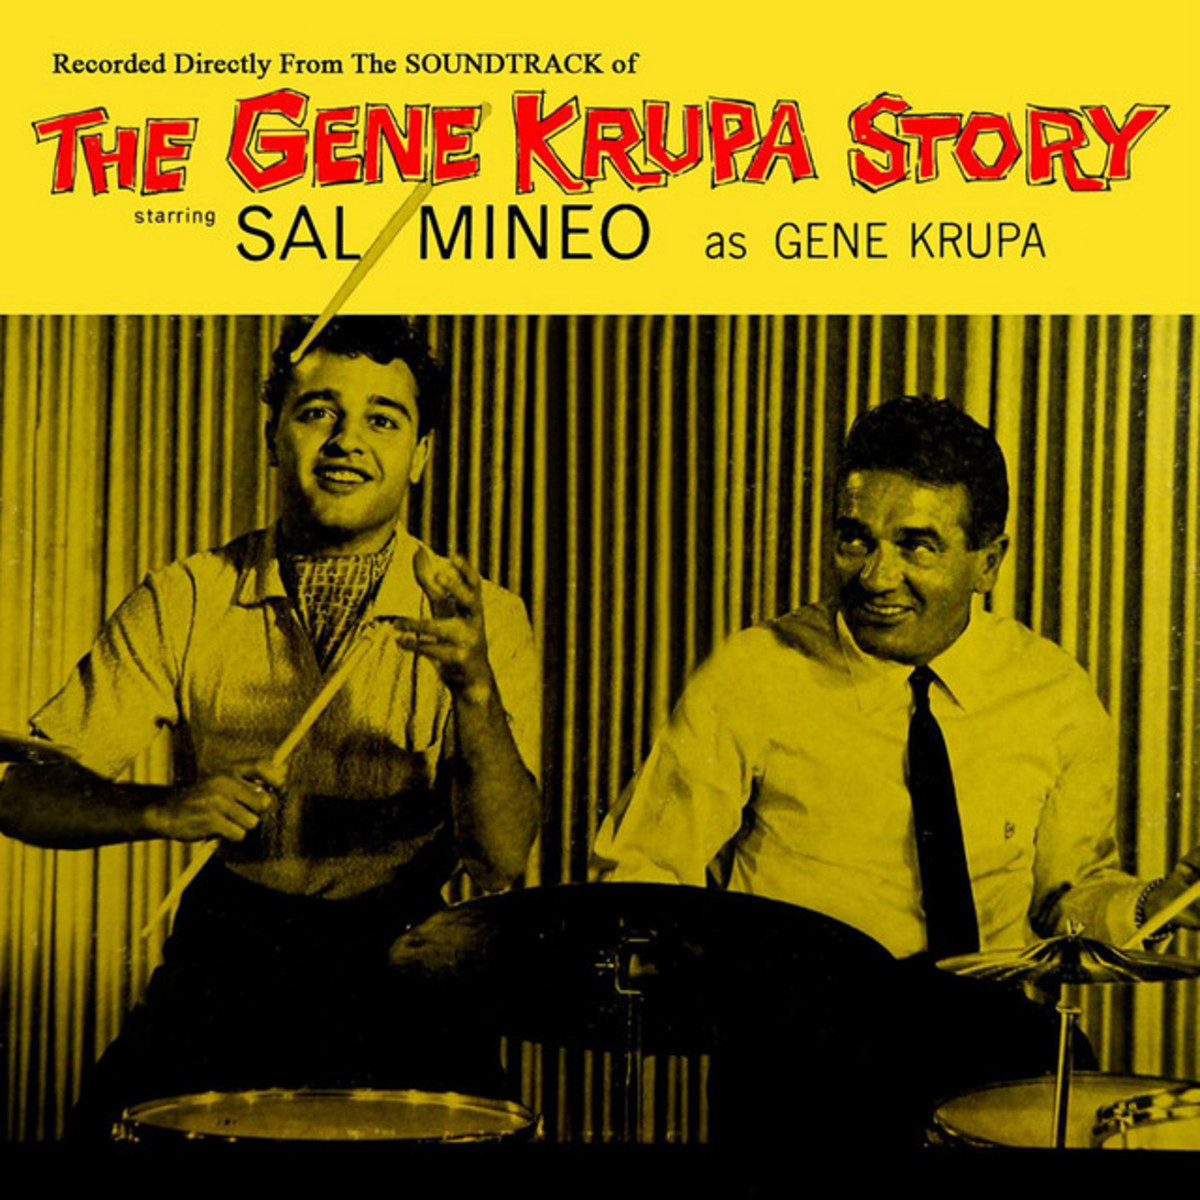 The Gene Krupa Story Soundtrack